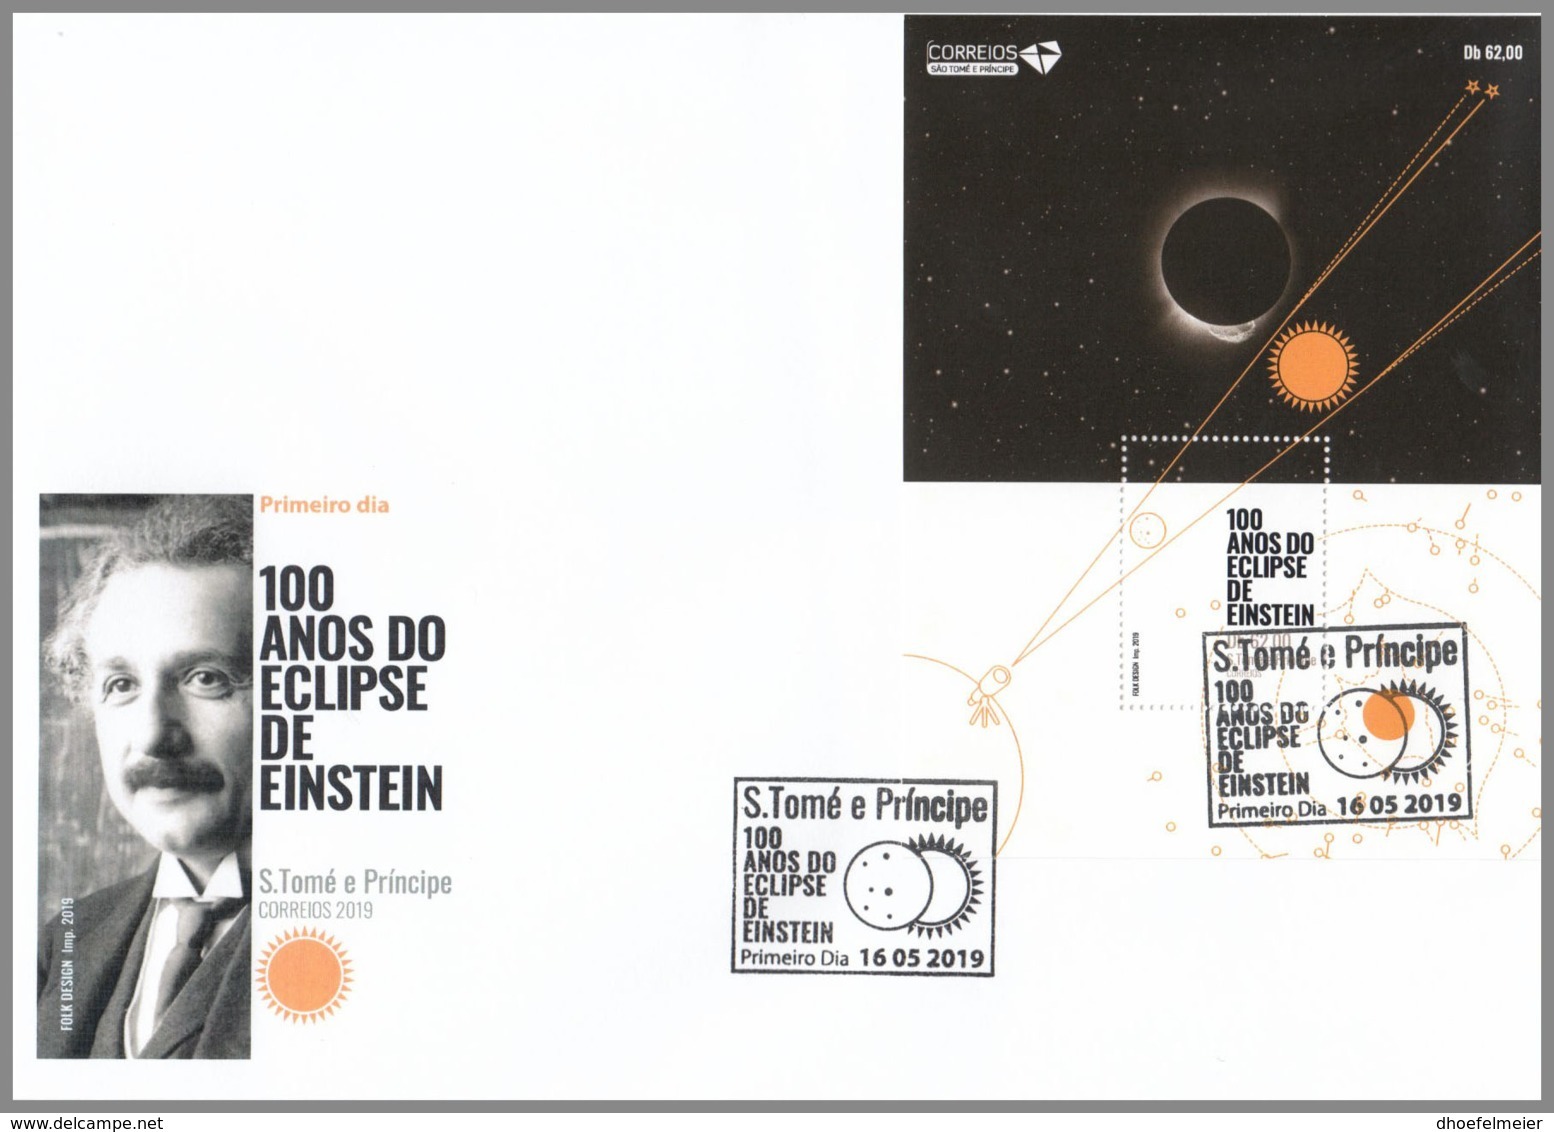 SAO TOME 2019 FDC Albert Einstein Eclipse Sonnenfinsternis S/S - OFFICIAL ISSUE - DH2008 - Albert Einstein